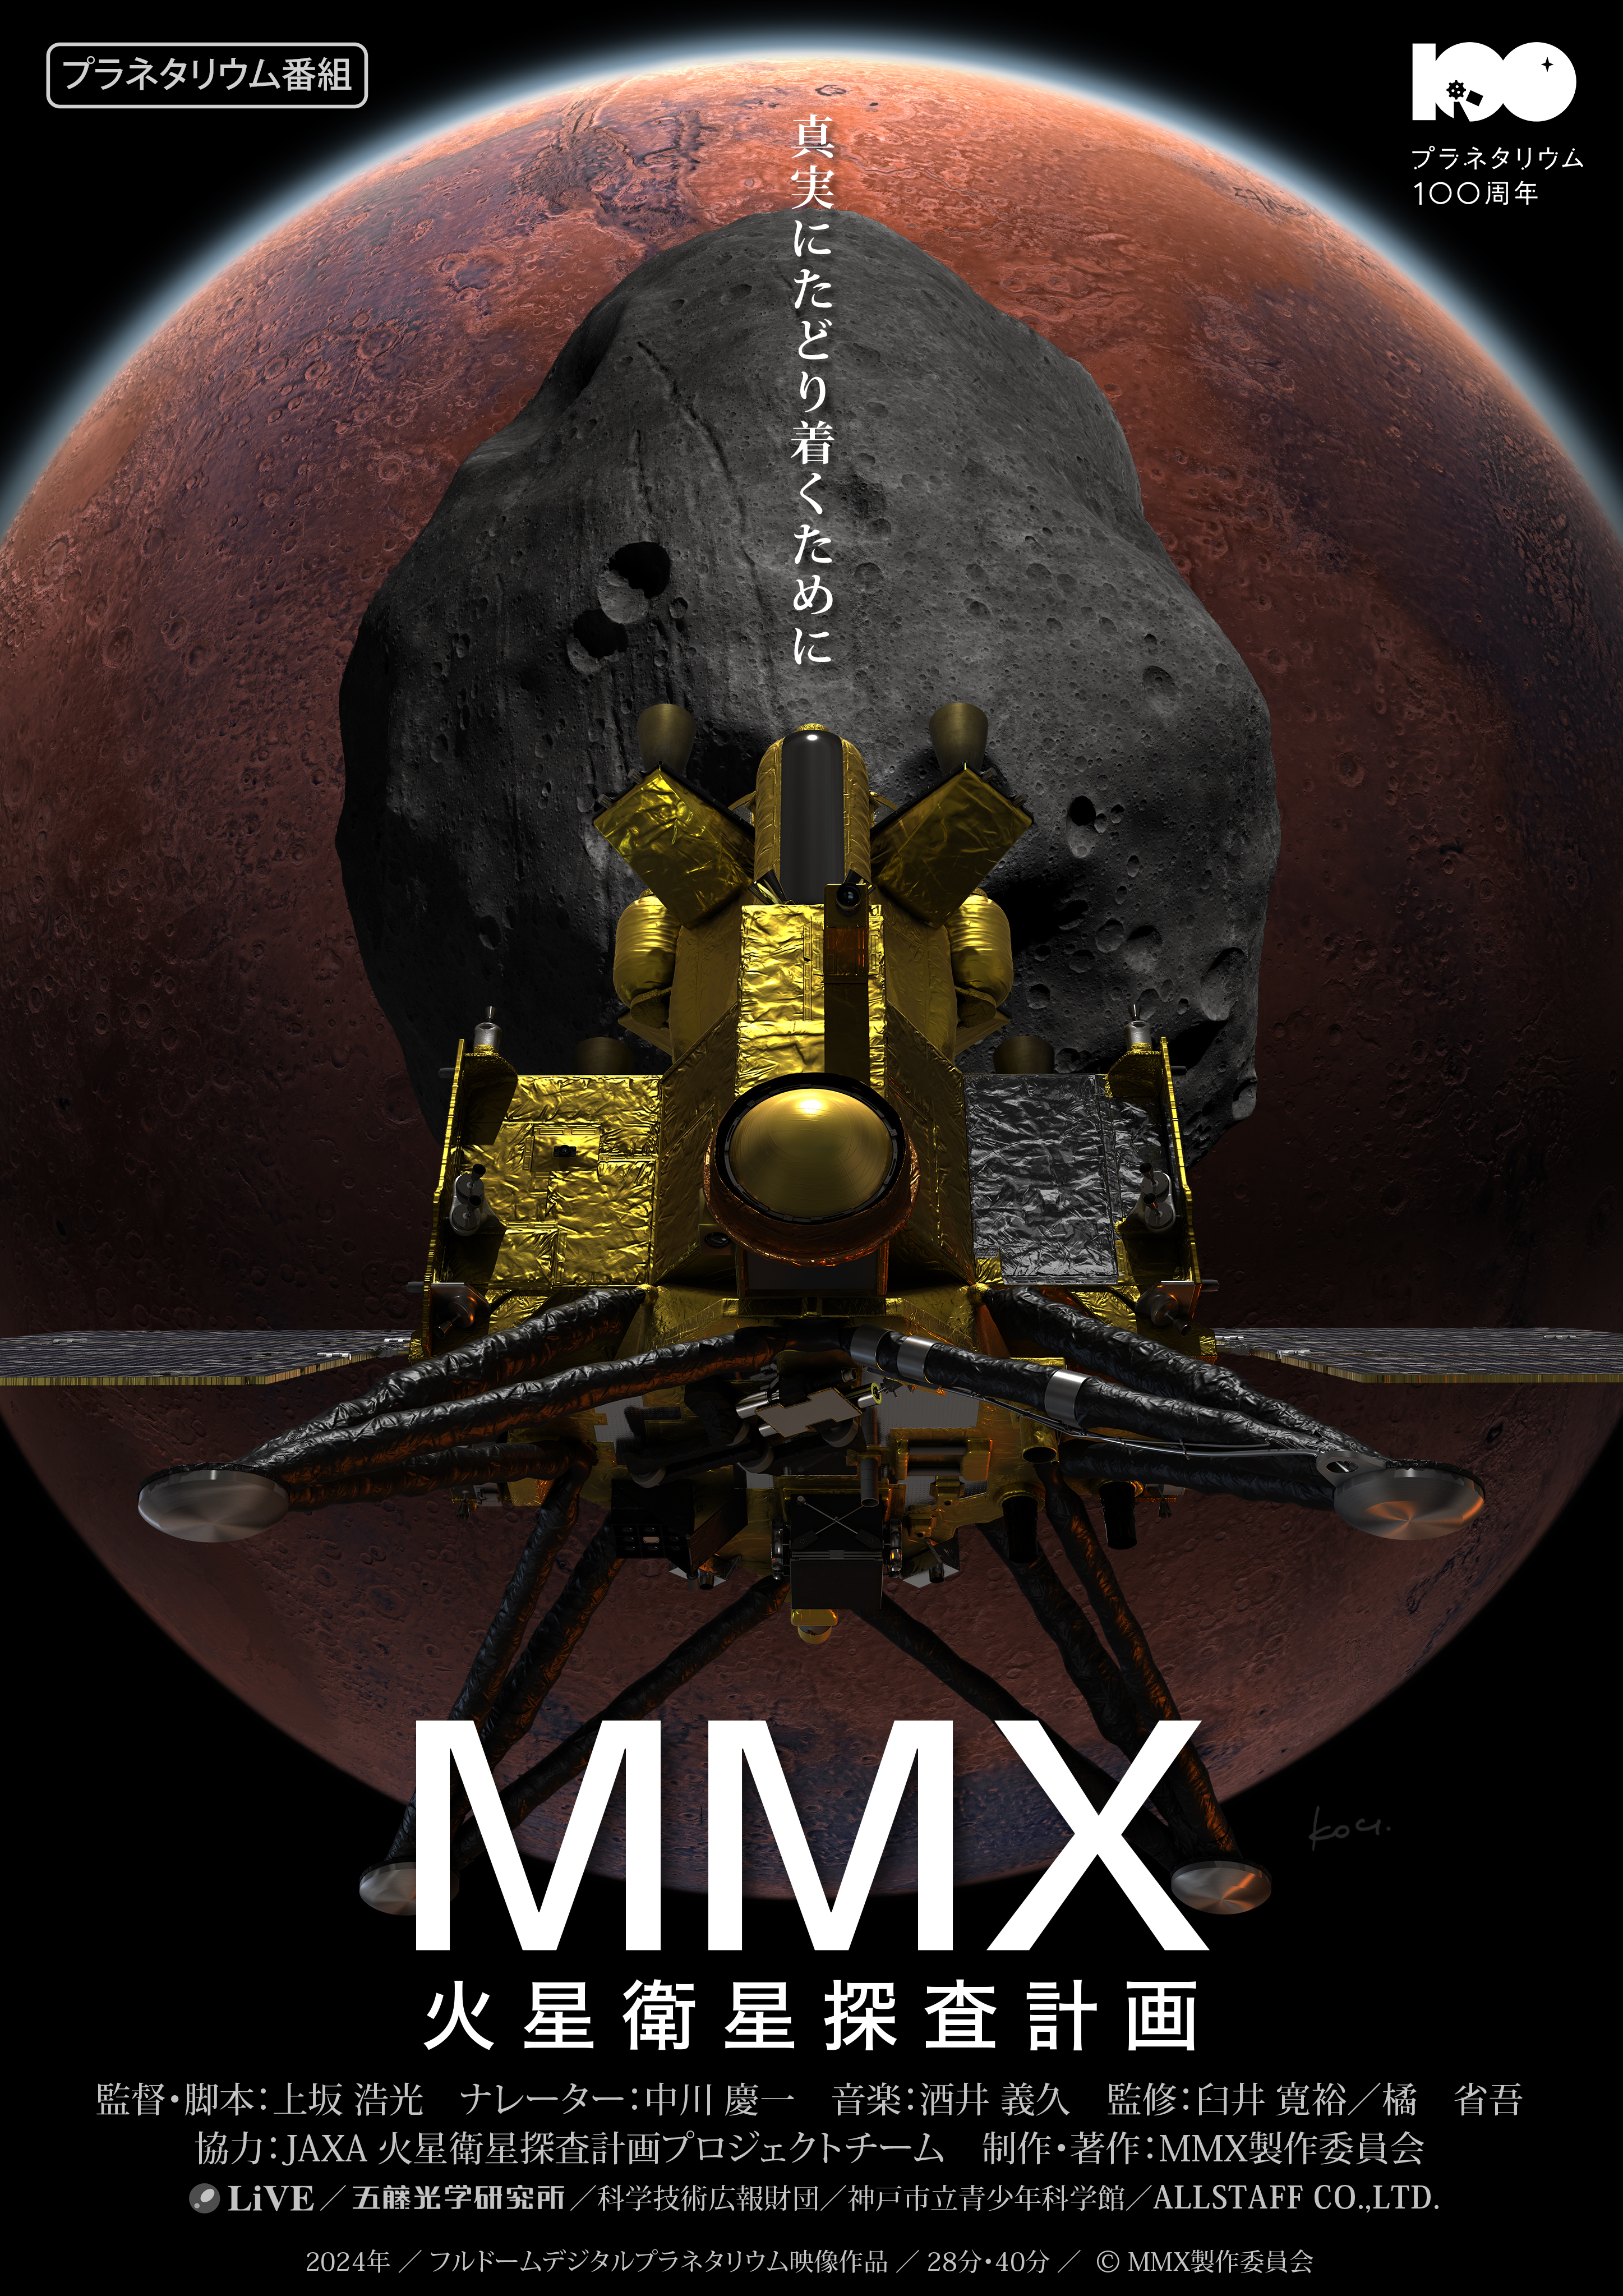 MMX 火星衛星探査計画